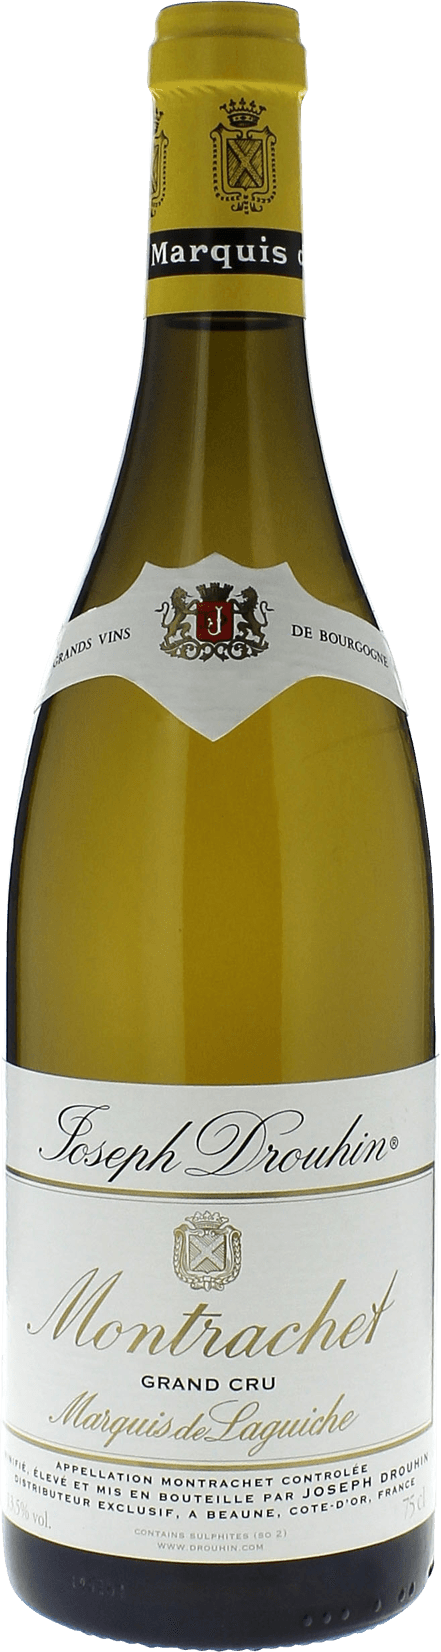 Montrachet marquis de laguiche 2012 Domaine Joseph DROUHIN, Bourgogne blanc